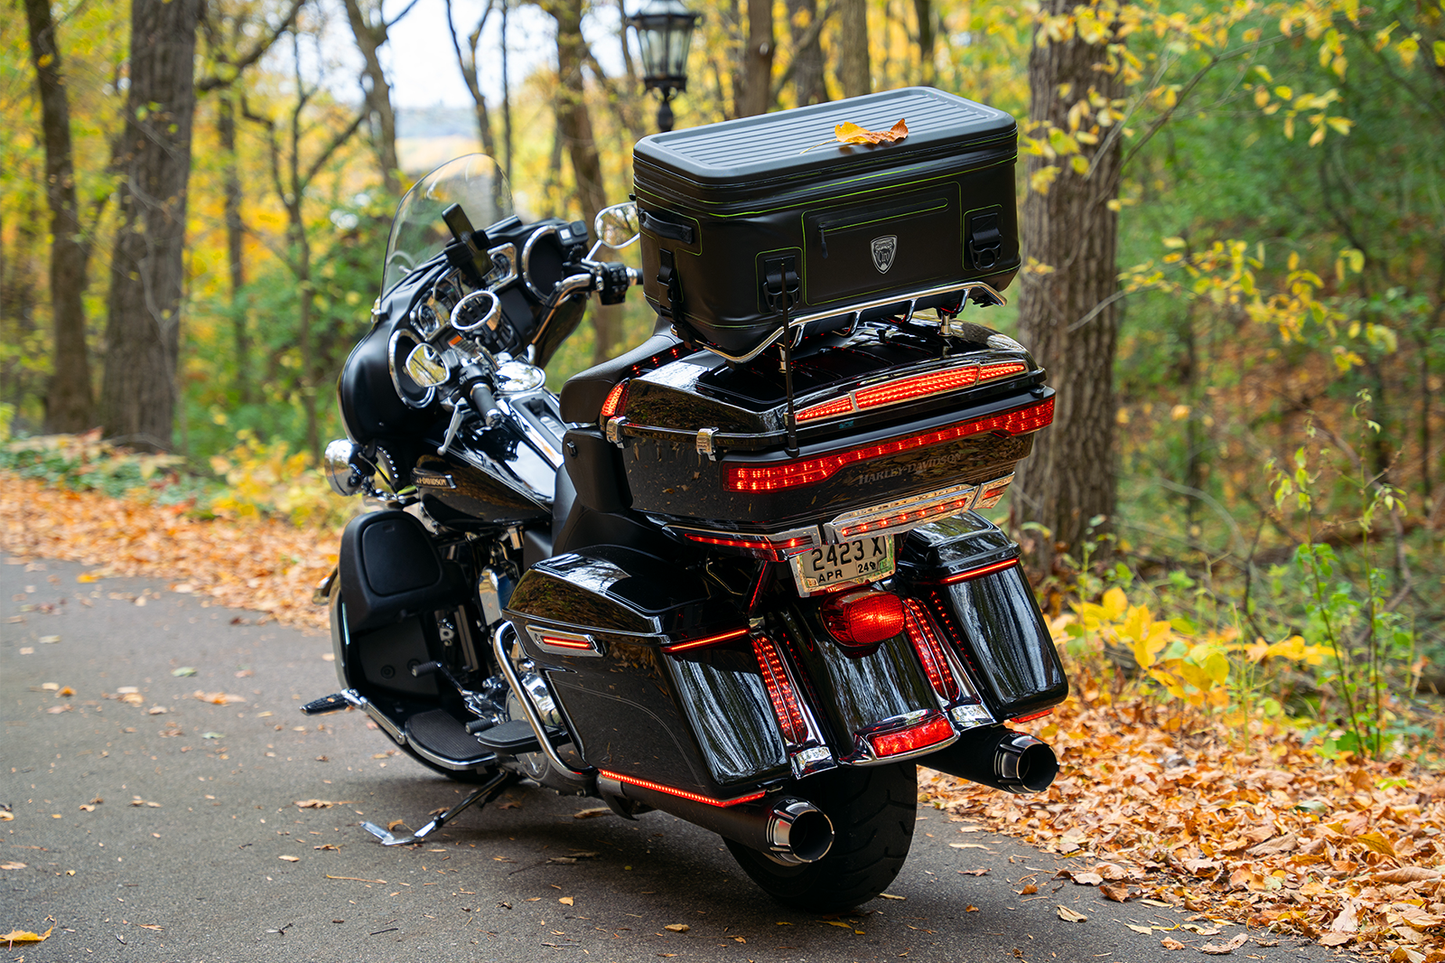 Dryforcetm Fast Release Imperproofr plus refroidisseur pour Harley Davidson